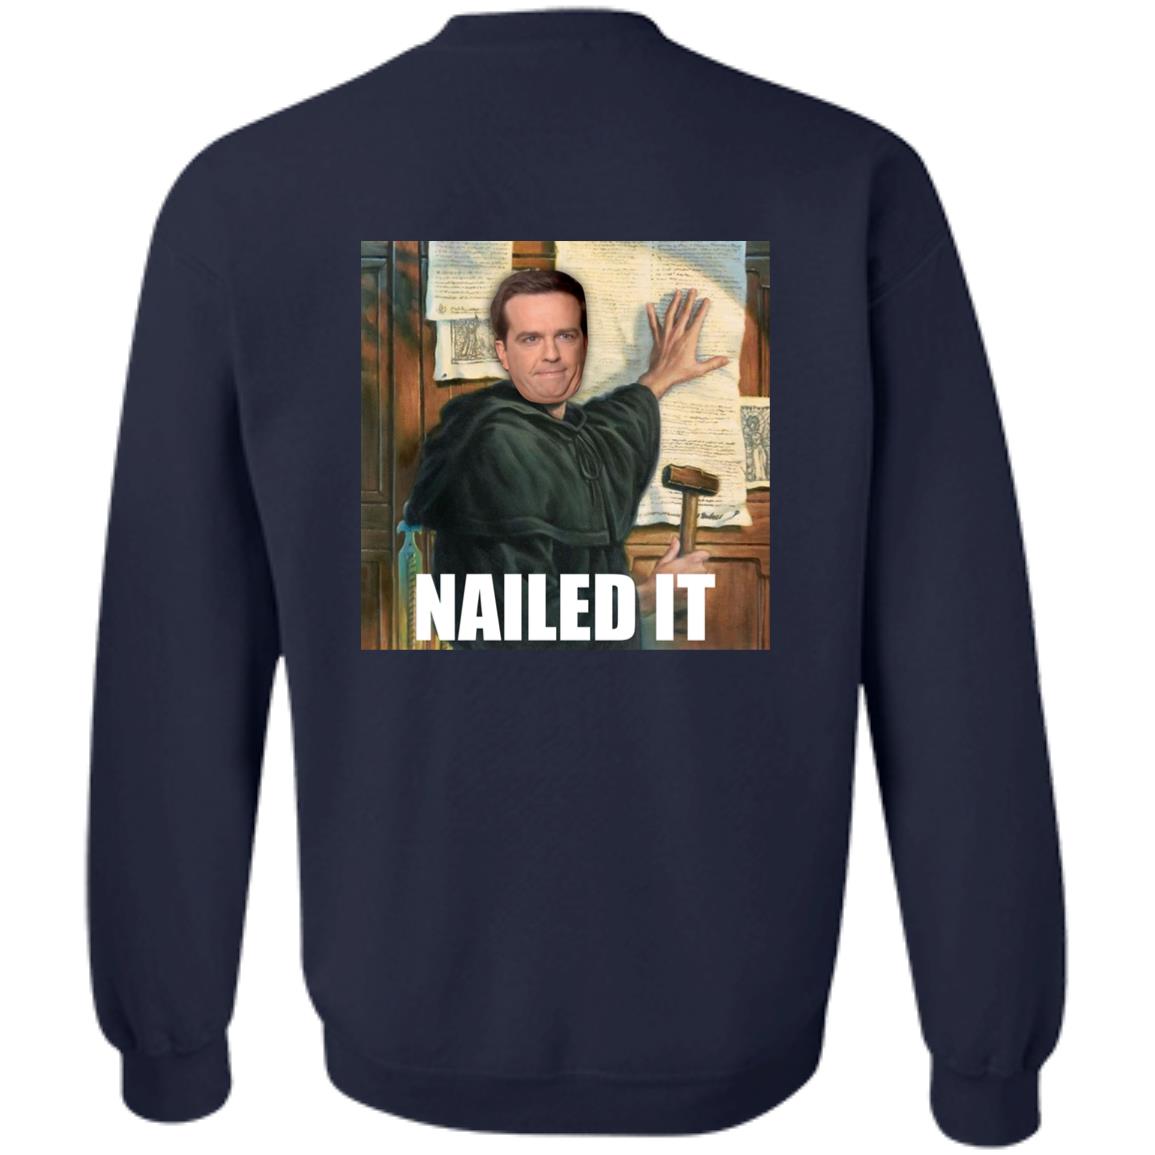 Nailed It (Unisex Sweatshirt)